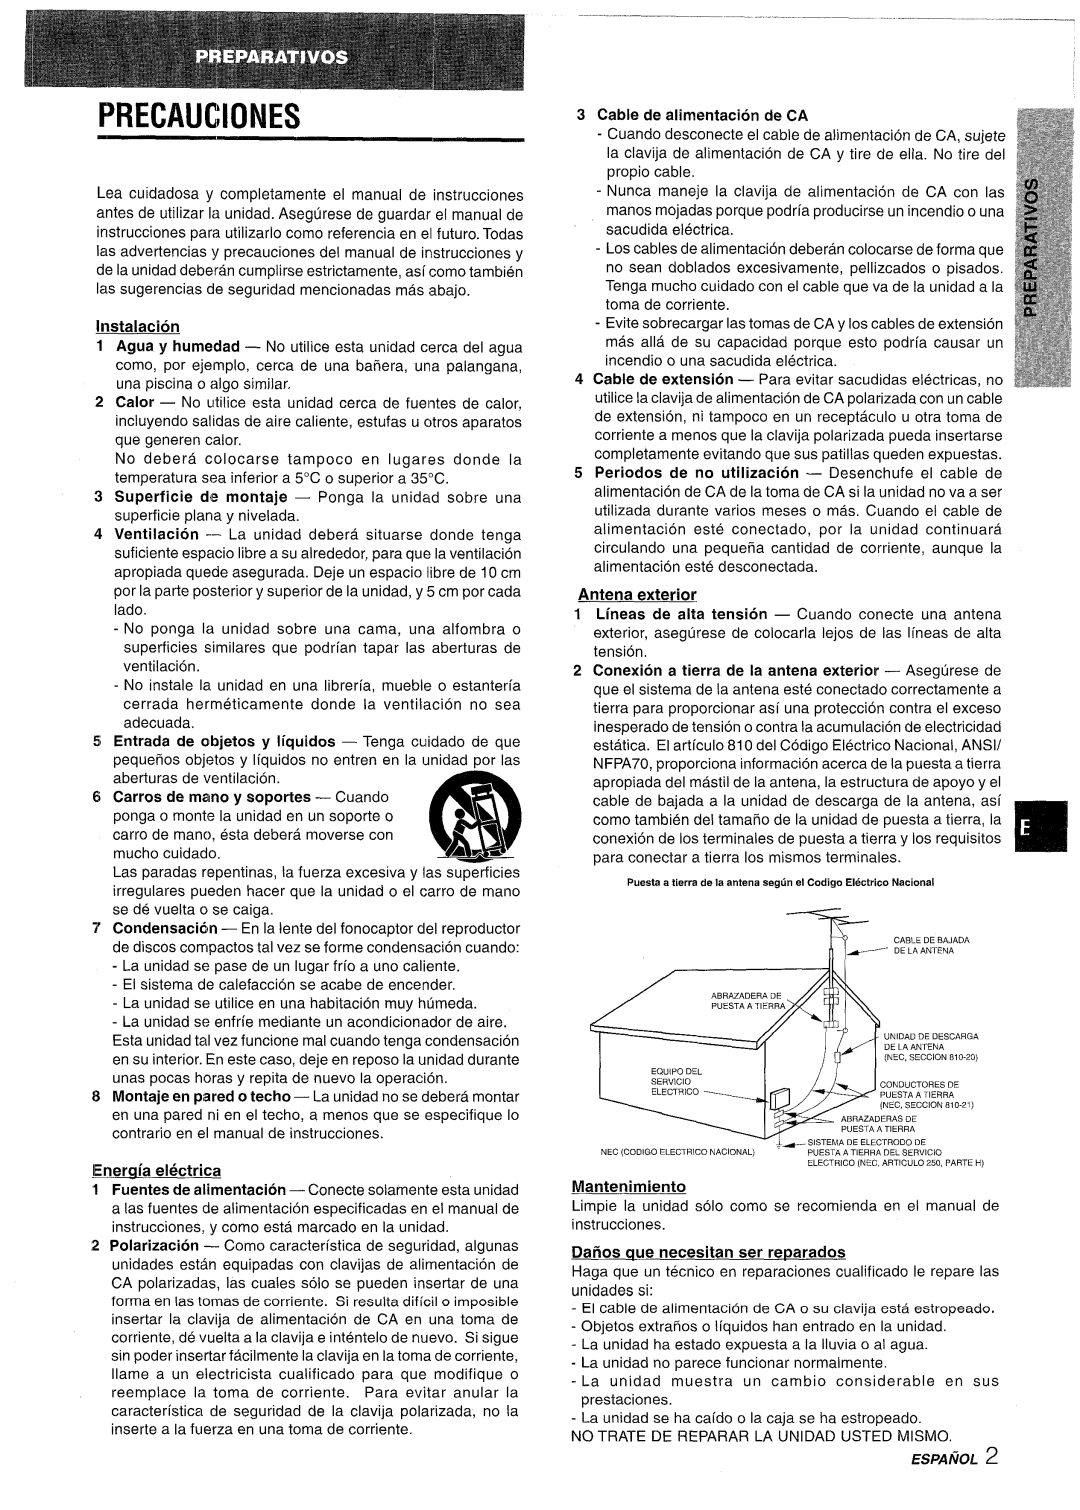 Aiwa NSX-AV800 manual Precauciones, Instalacion, Carros de mano y soportes - Cuando, Energria electrica, Antena exterior 